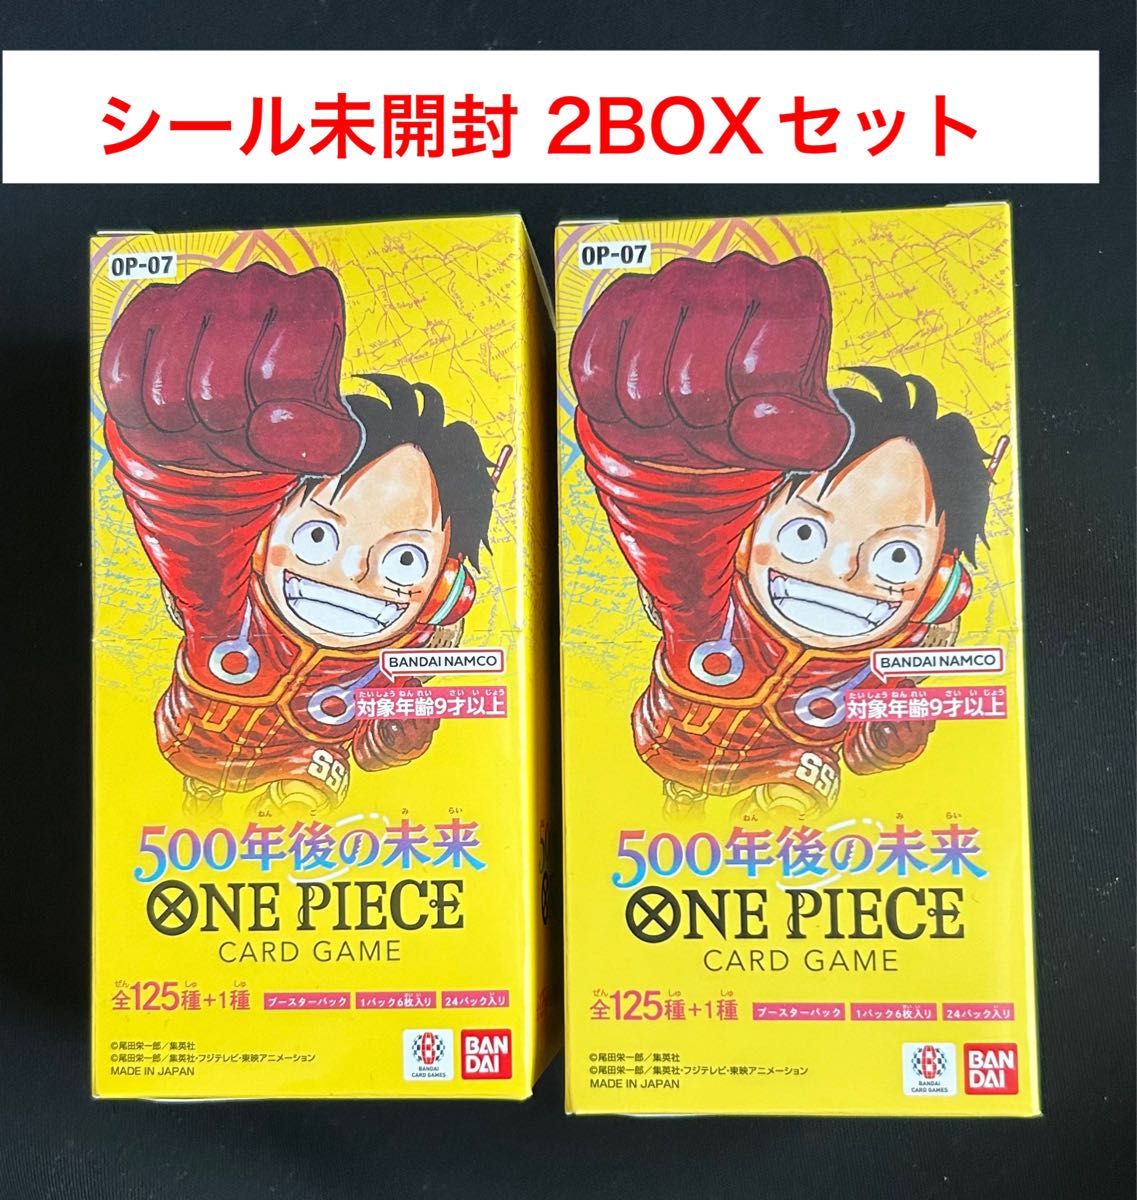 【新品未開封】ONE PIECE カードゲーム ブースターパック 500年後の未来 (OP-07)  2BOXセット